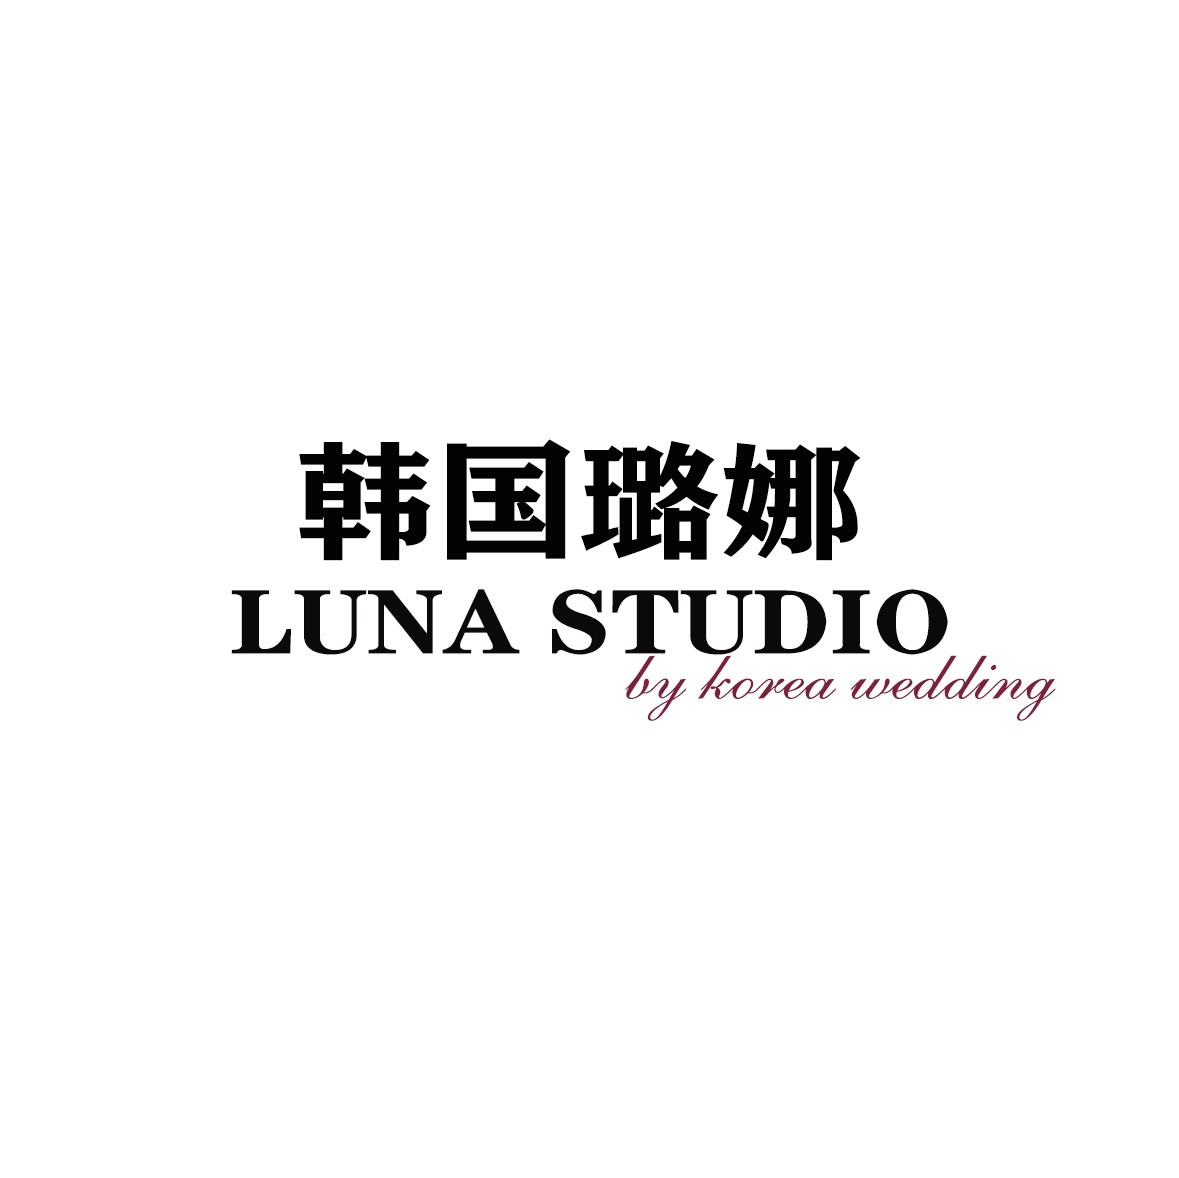 徐州璐娜Luna studio婚纱摄影